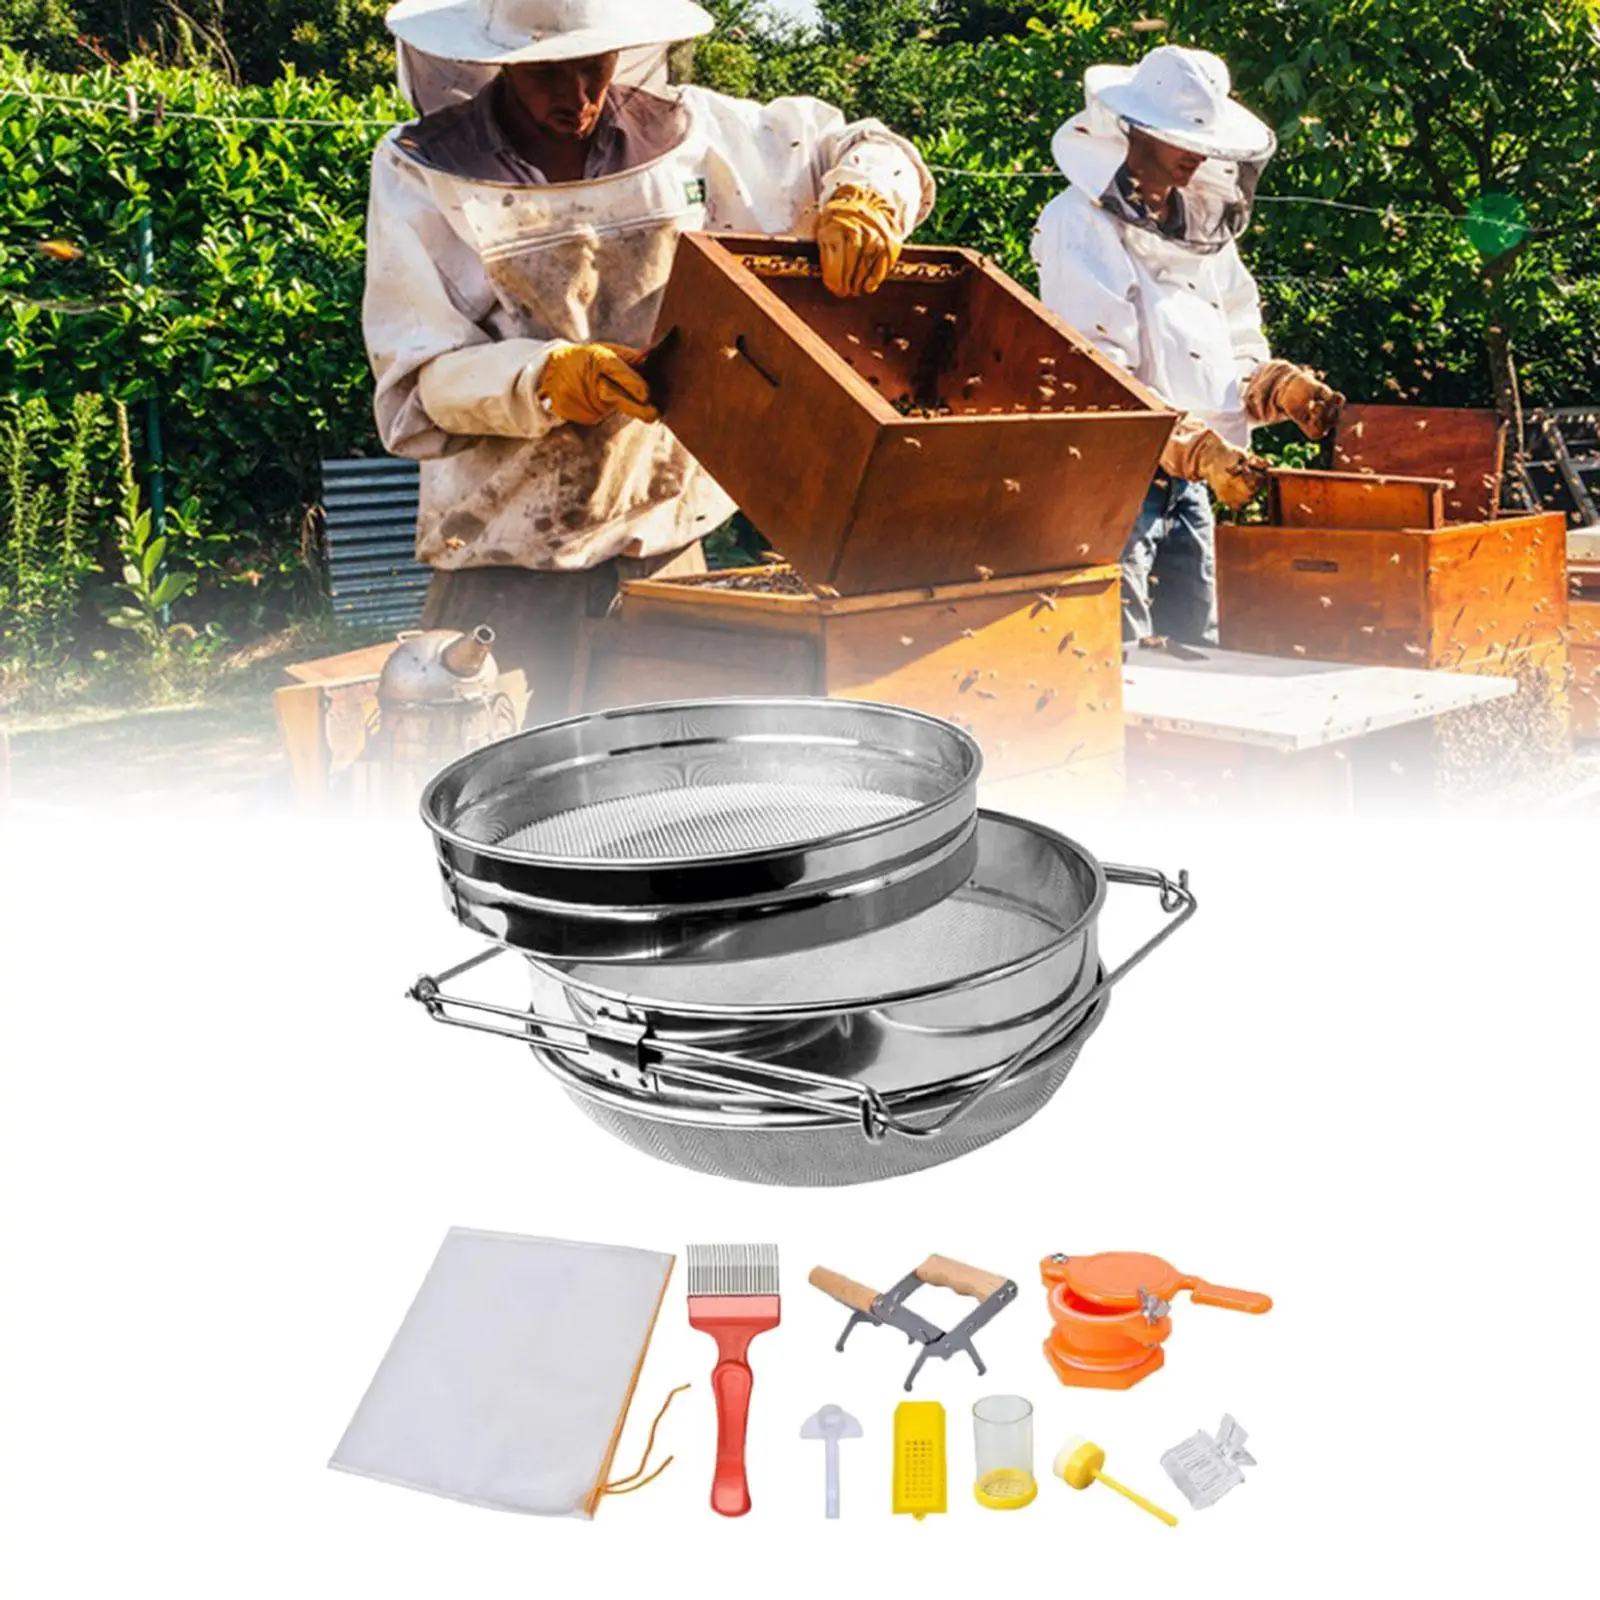 9x Beekeeping Supplies Stainless Steel Filter Net Beekeeping Starter Kits Reusable for Honey Backyard Beginners Farm